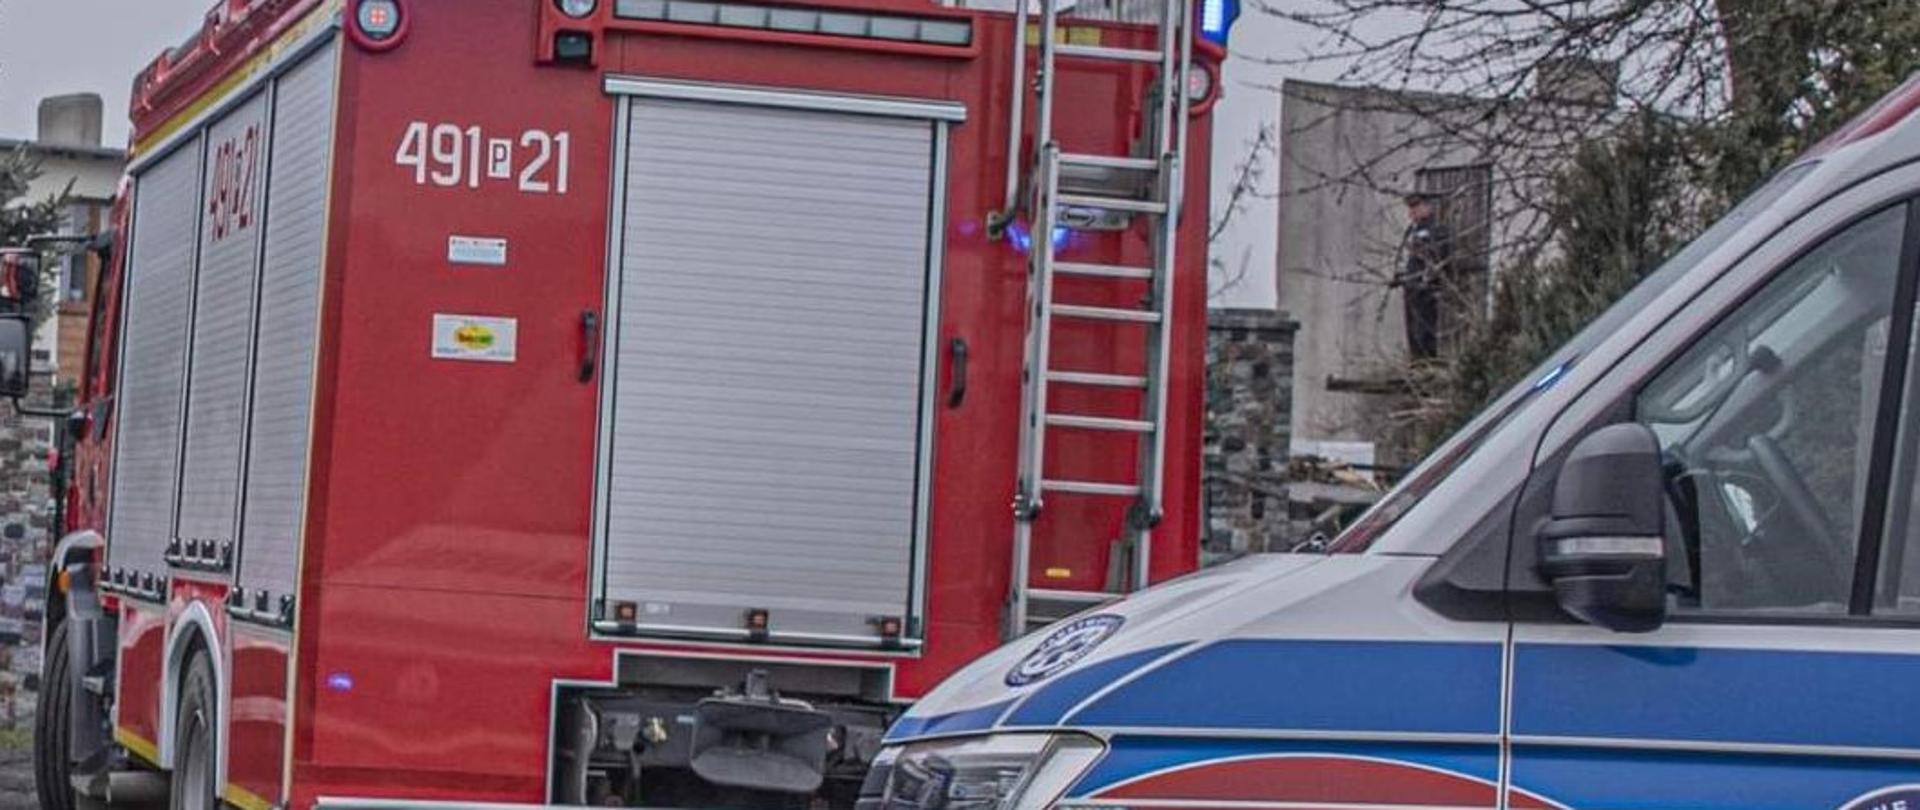 Zdjęcie poglądowe pojazdu strażackiego należącego do Jednostki Ratowniczo-Gaśniczej w Krotoszynie oraz karetki pogotowia. Zdjęcie nawiązuje do zdarzenia w którym wspólne czynności prowadziła obsada PRM oraz strażący z JRG Krotoszyn